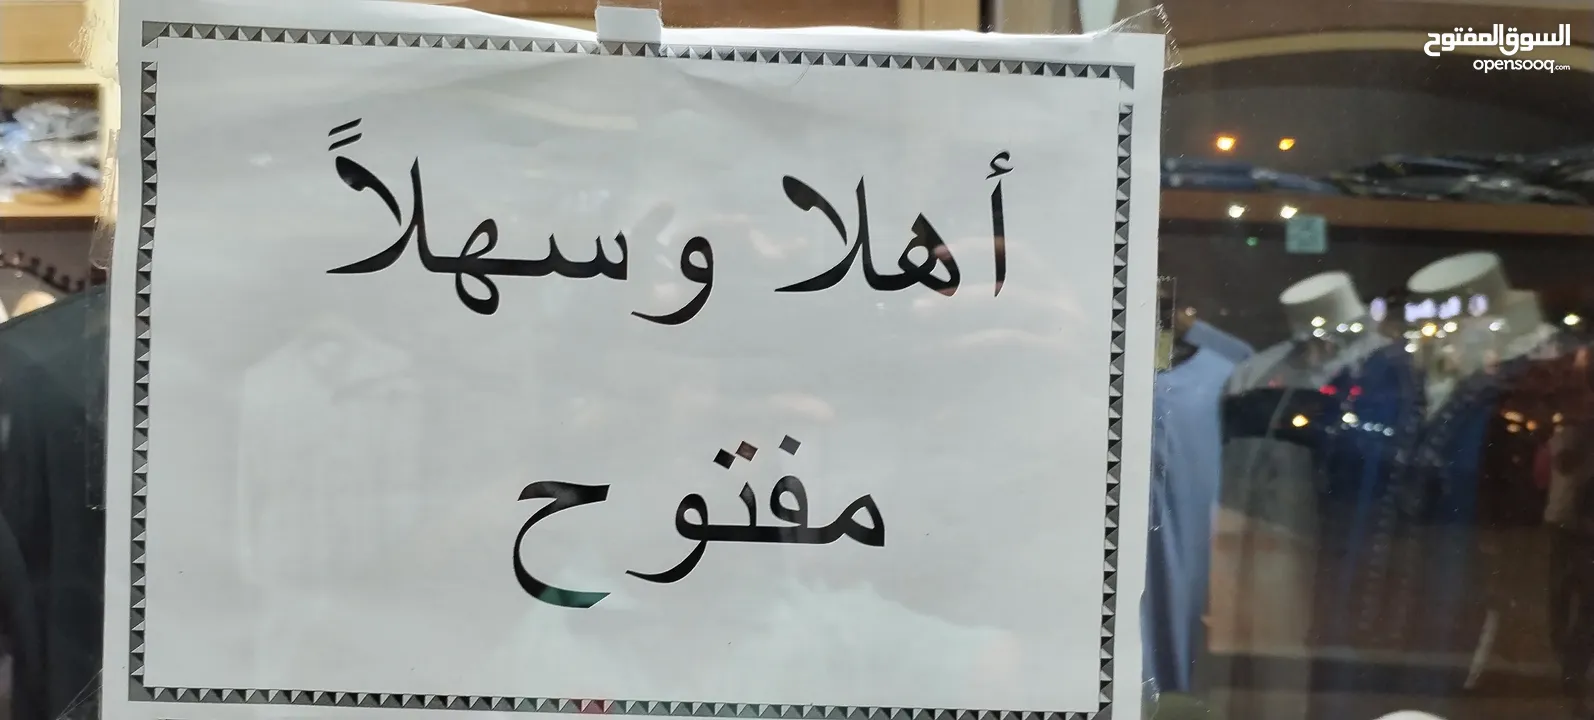 محل القرشي للزي الليبي أثواب بدالي عربية